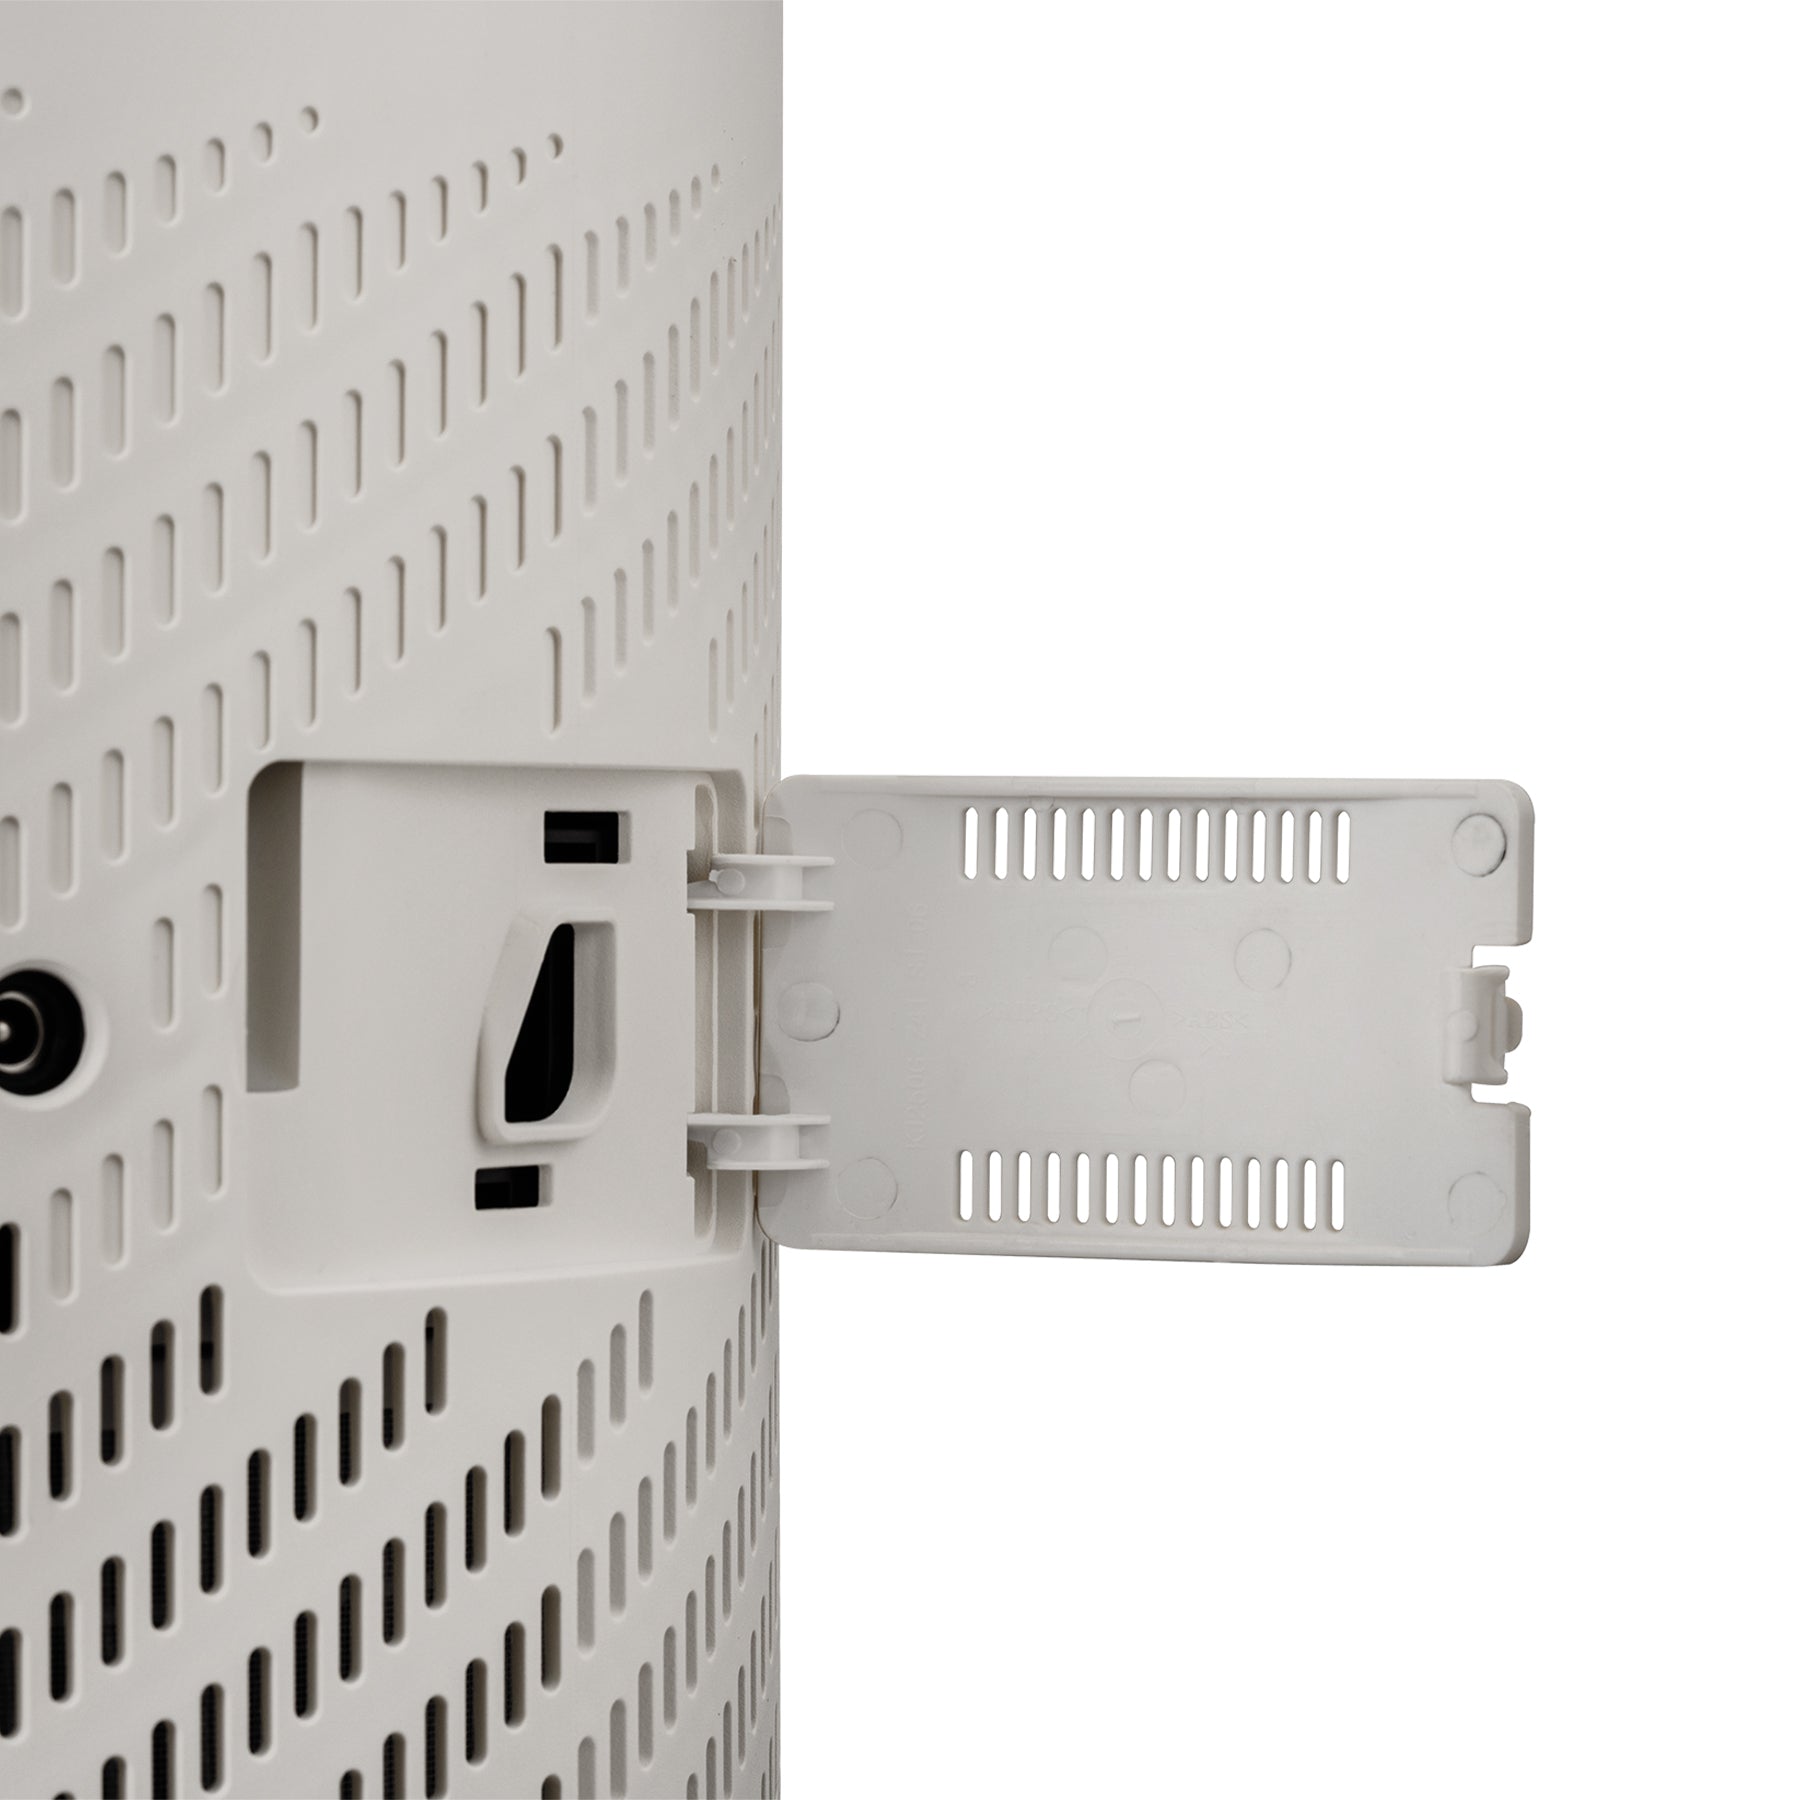  CUCKOO Purificador de aire con filtro HEPA H13 de 5 etapas para  habitaciones de gran tamaño (470 pies cuadrados), UV-C, filtros de carbón  activado 99.97% de olores, humo, polvo, polen, caspa